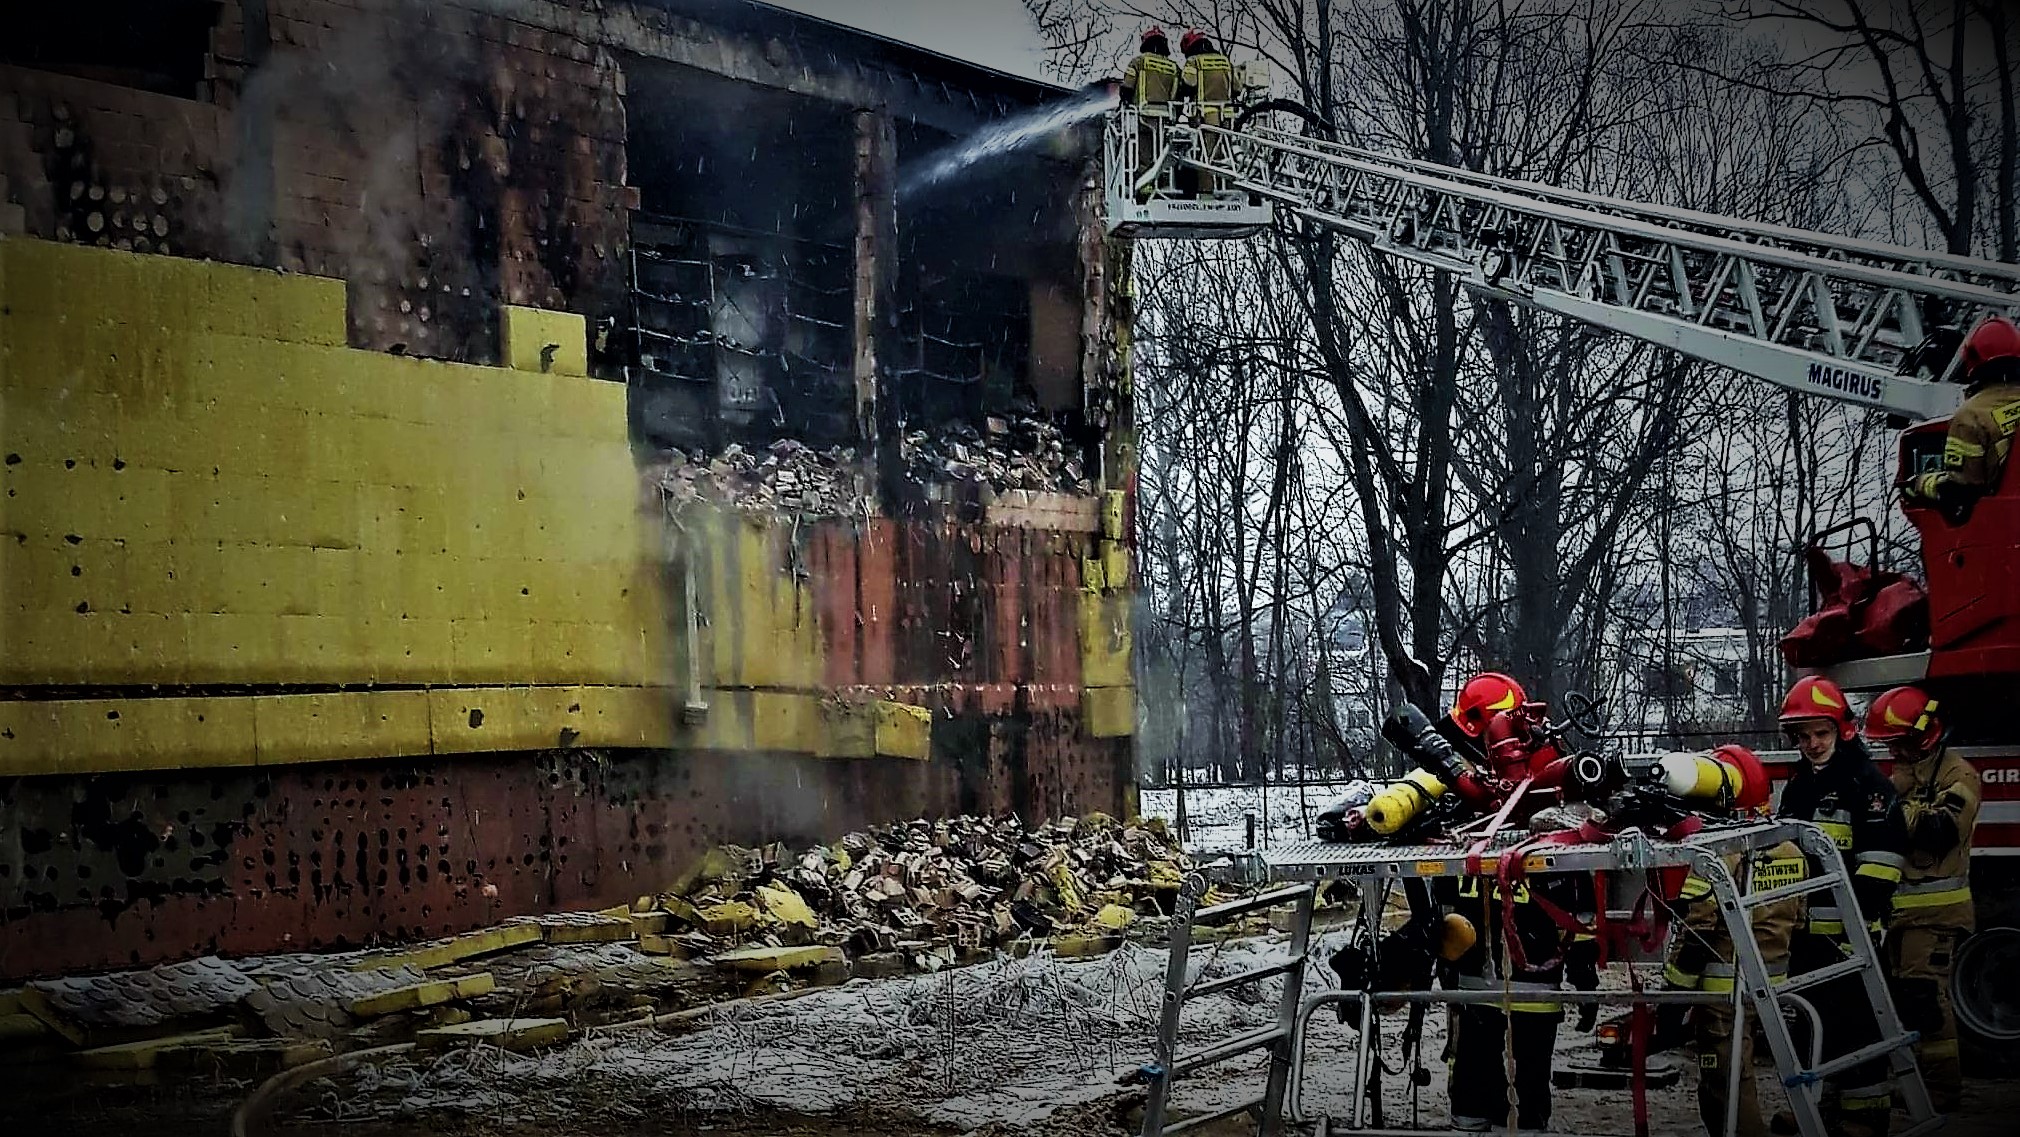 RMF wskazuje przyczyny pożaru Archiwum Miasta Krakowa